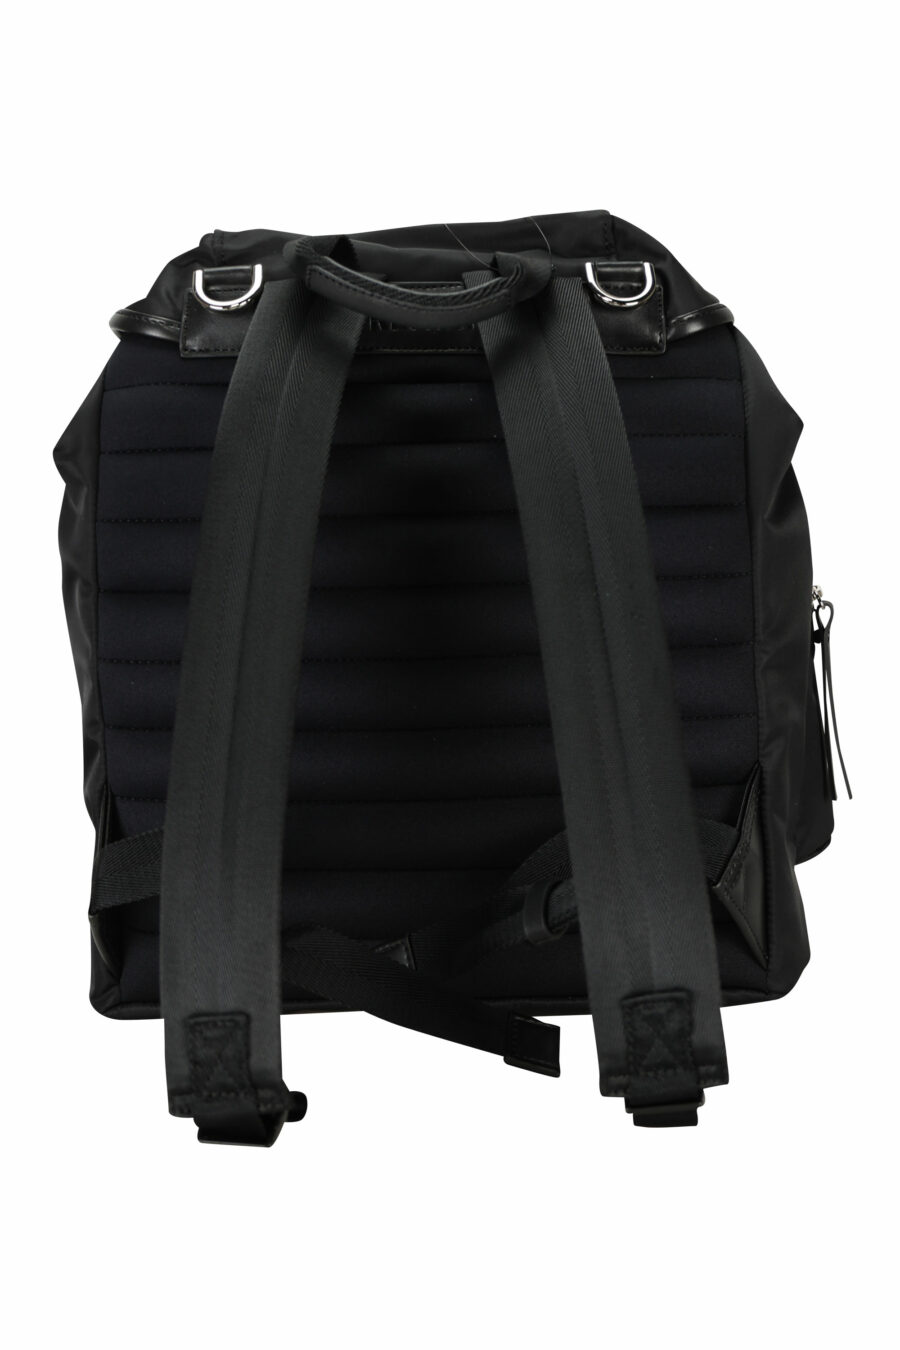 Black backpack LYN 2100 - 8058325910155 2